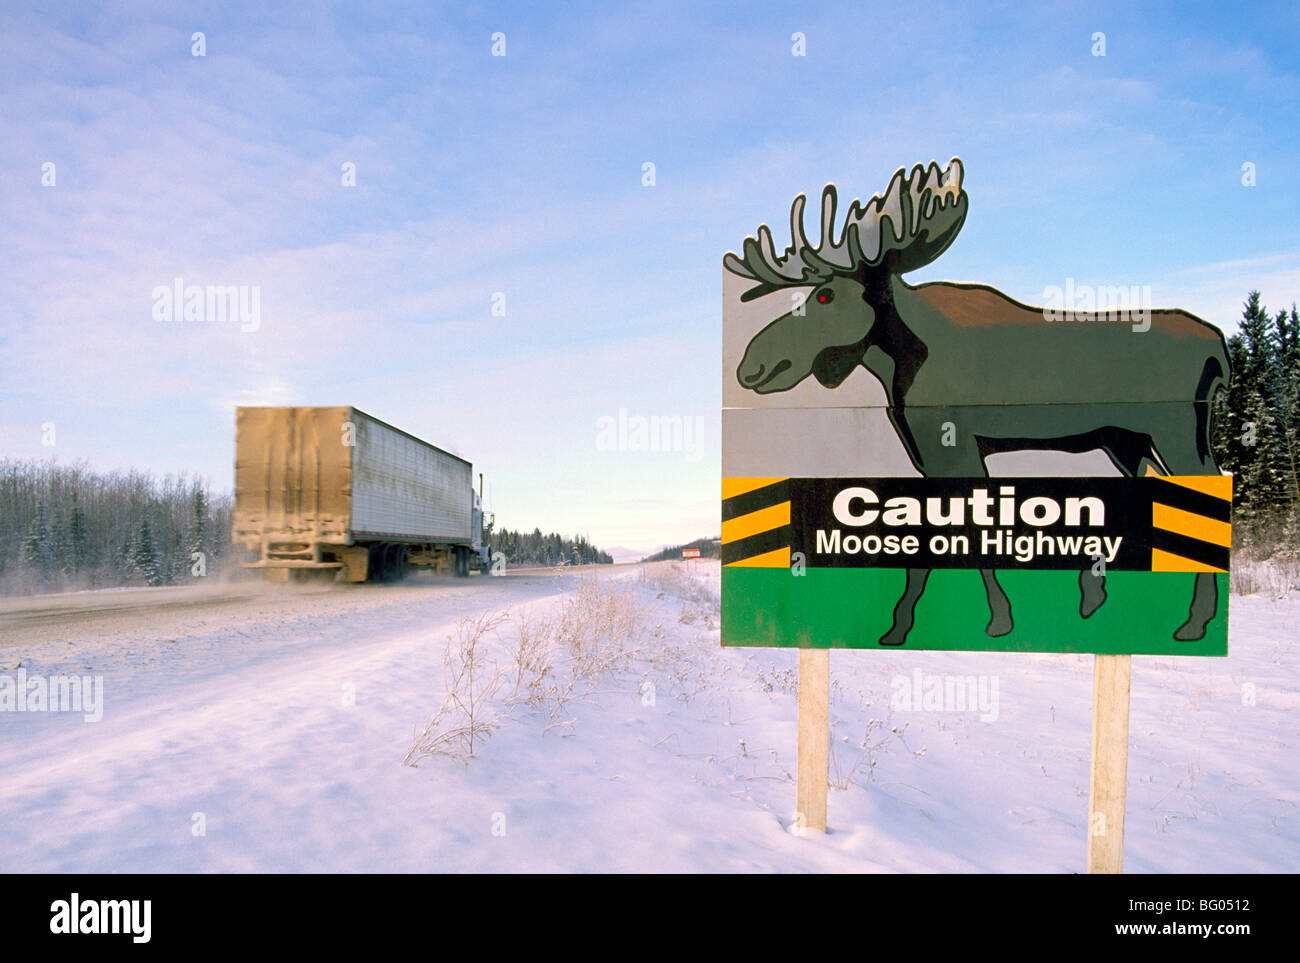 Route de l'Alaska, les Rocheuses du Nord, C.-B., en Colombie-Britannique, Canada - Avertissement Attention panneau routier de Moose Animal Crossing, Hiver Banque D'Images